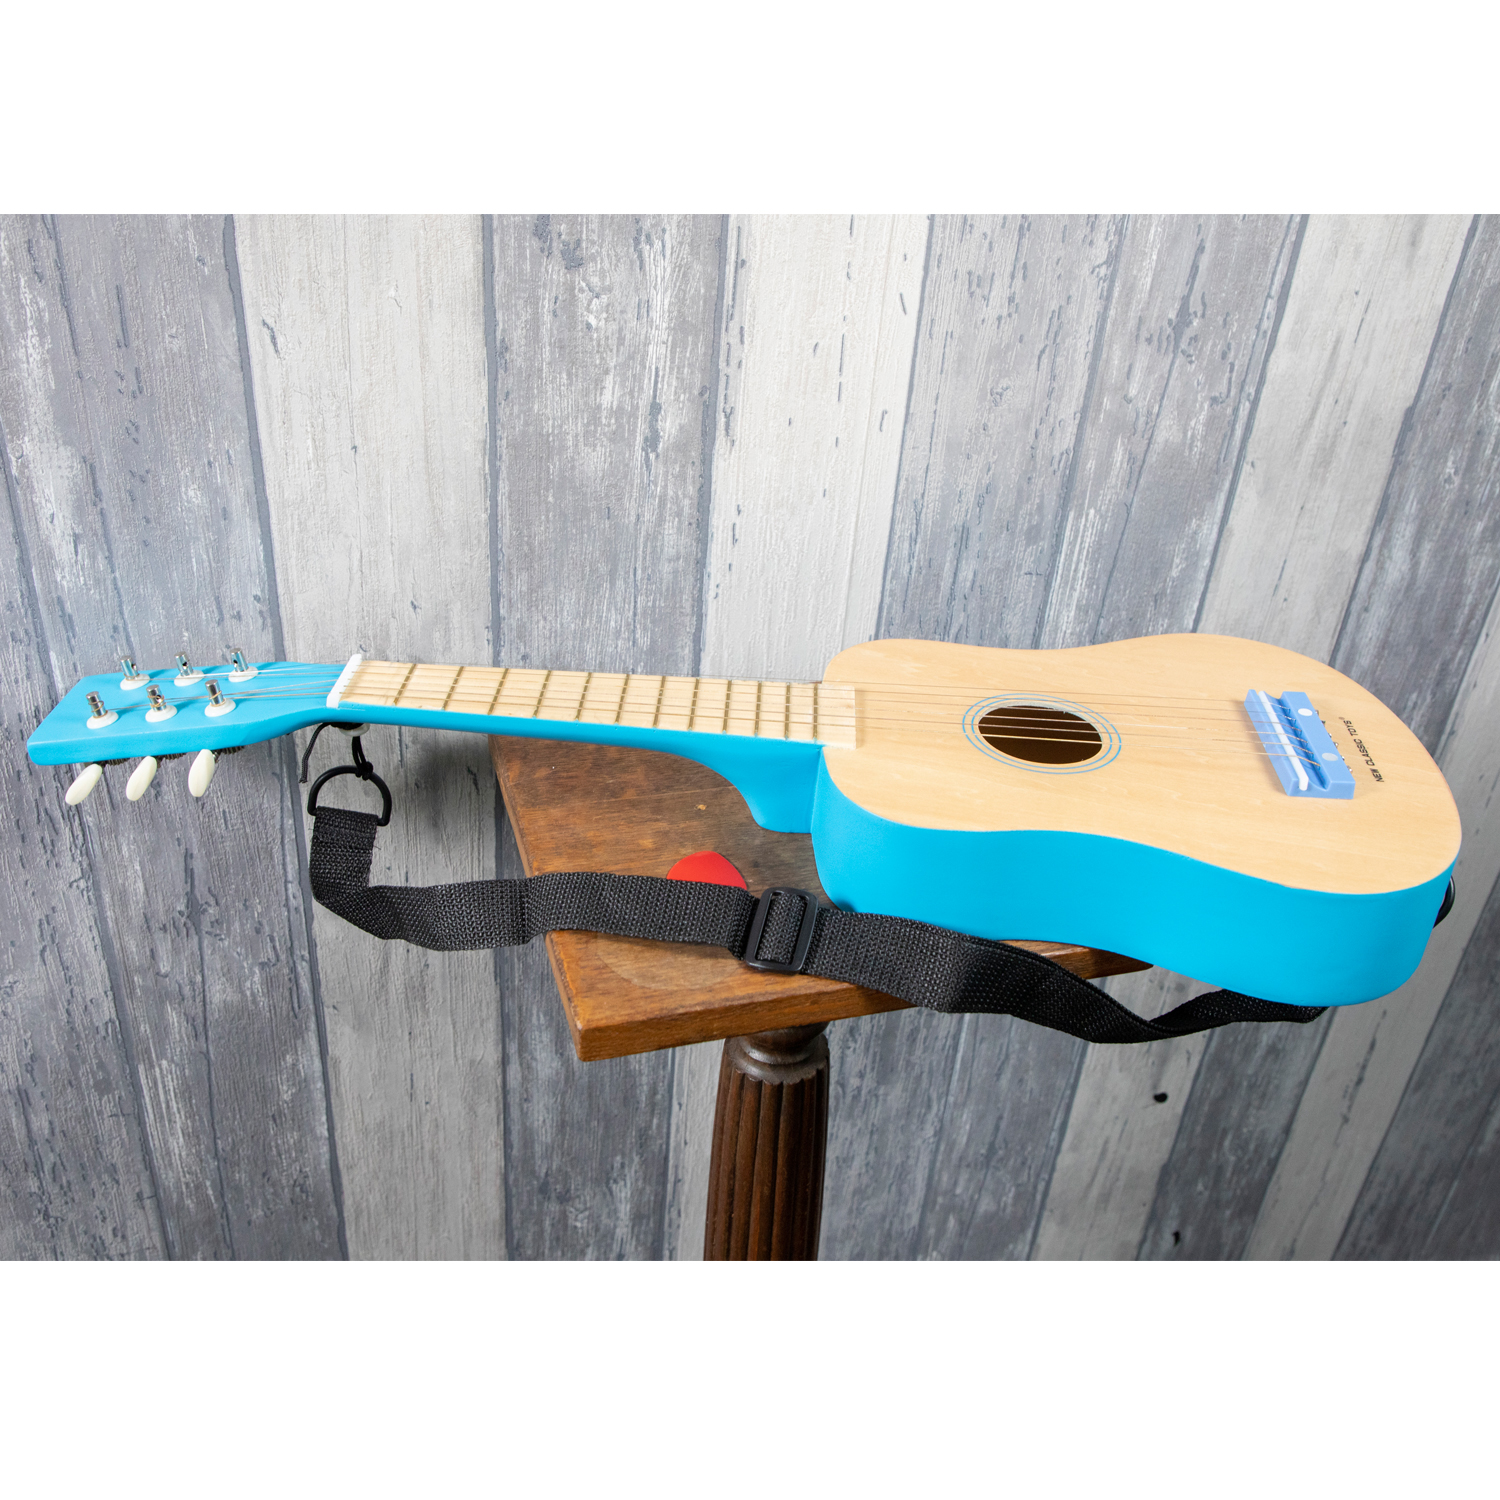 Naturelle/Bleue Instruments de Musique Guitare 10301 New Classic Toys 